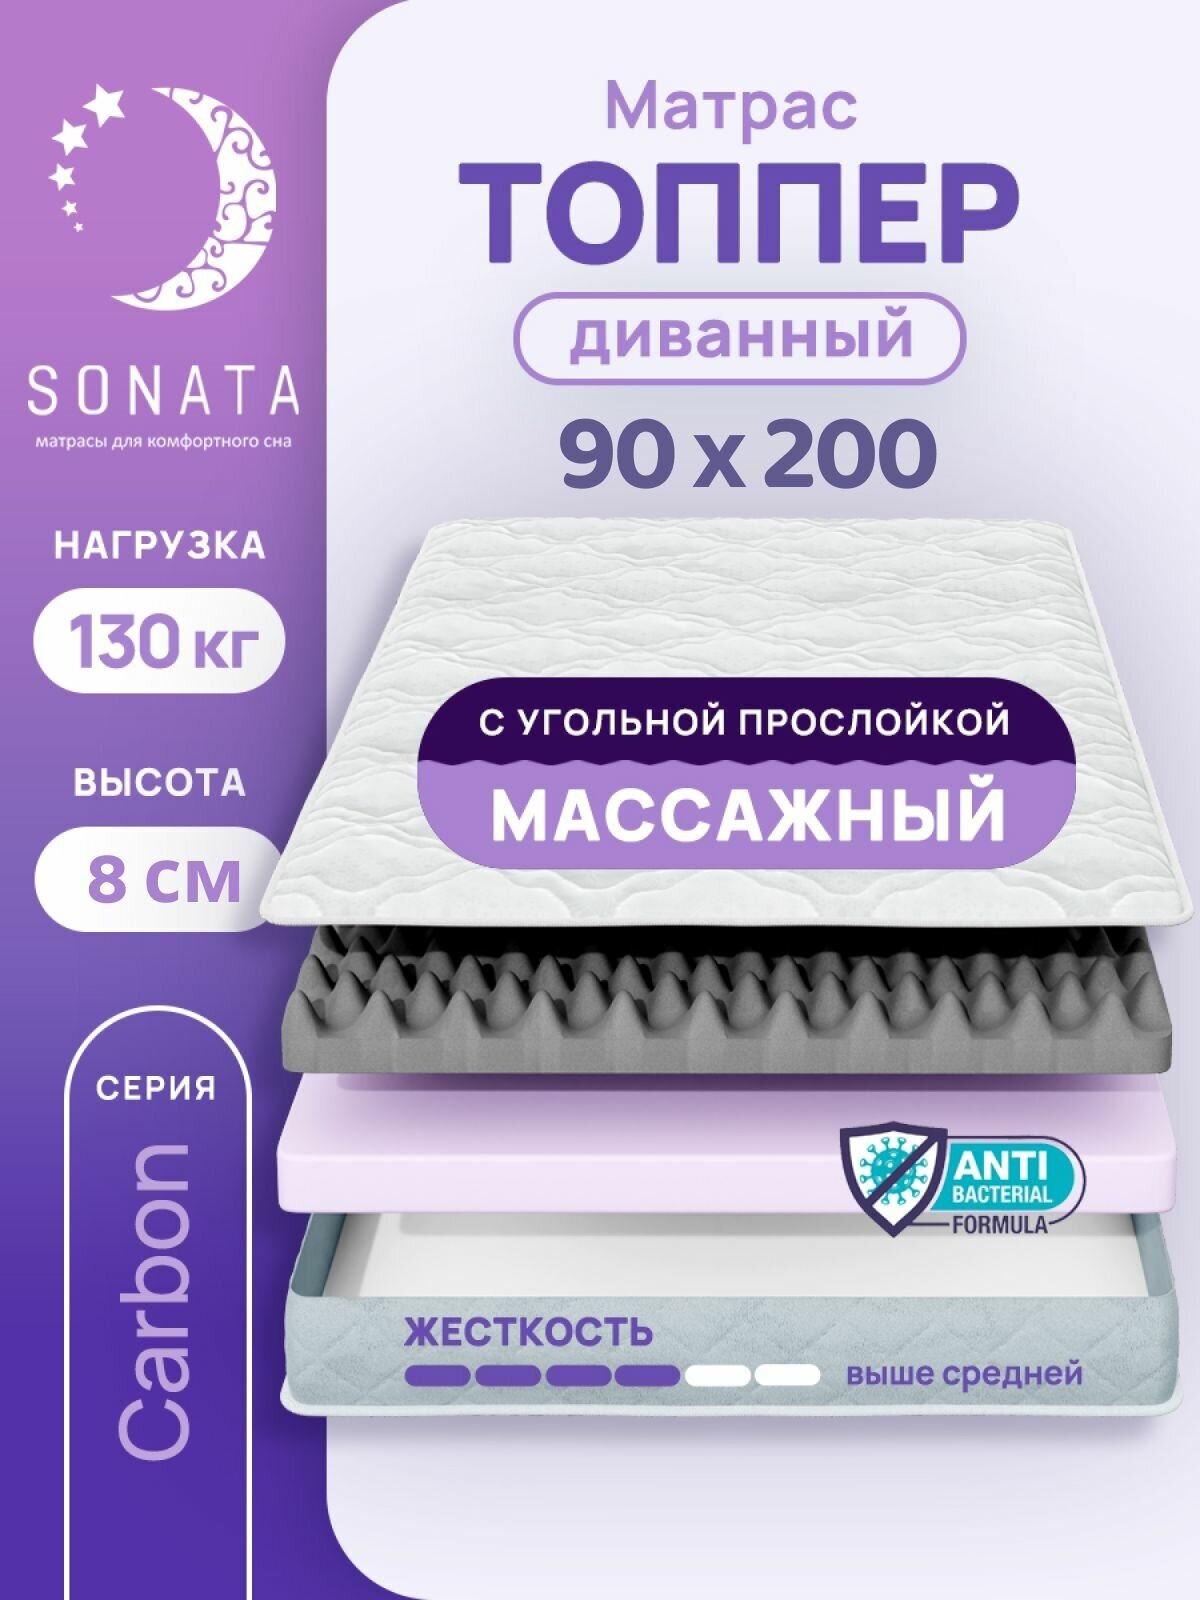 Топпер матрас 90х200 см SONATA, ортопедический, беспружинный, односпальный, тонкий матрац для дивана, кровати, высота 8 см с массажным эффектом